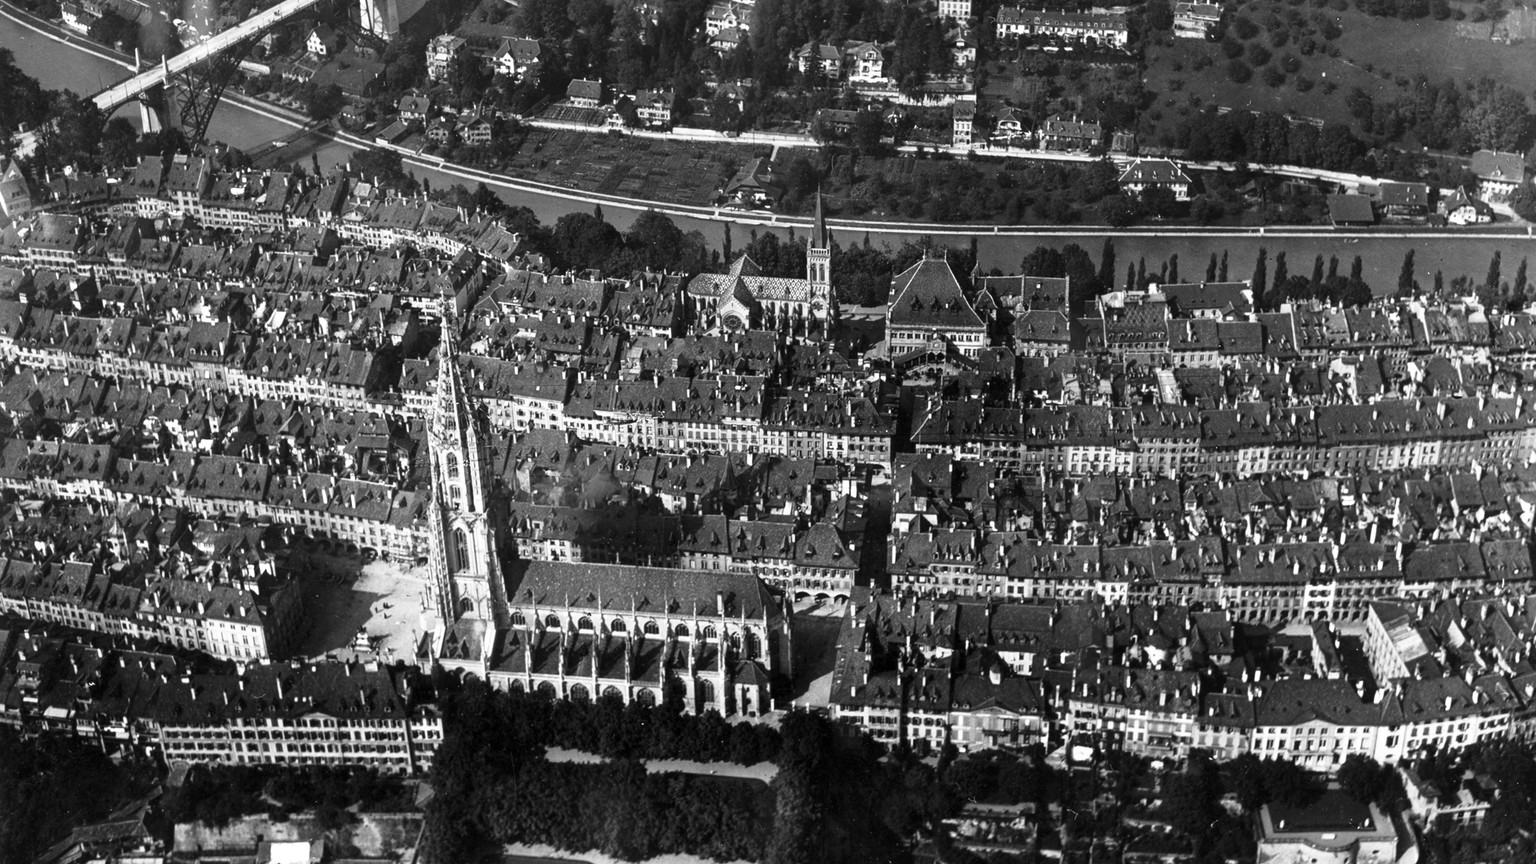 Luftaufnahme der Stadt Bern, gemacht von Flugpionier Walter Mittelholzer, um 1920.